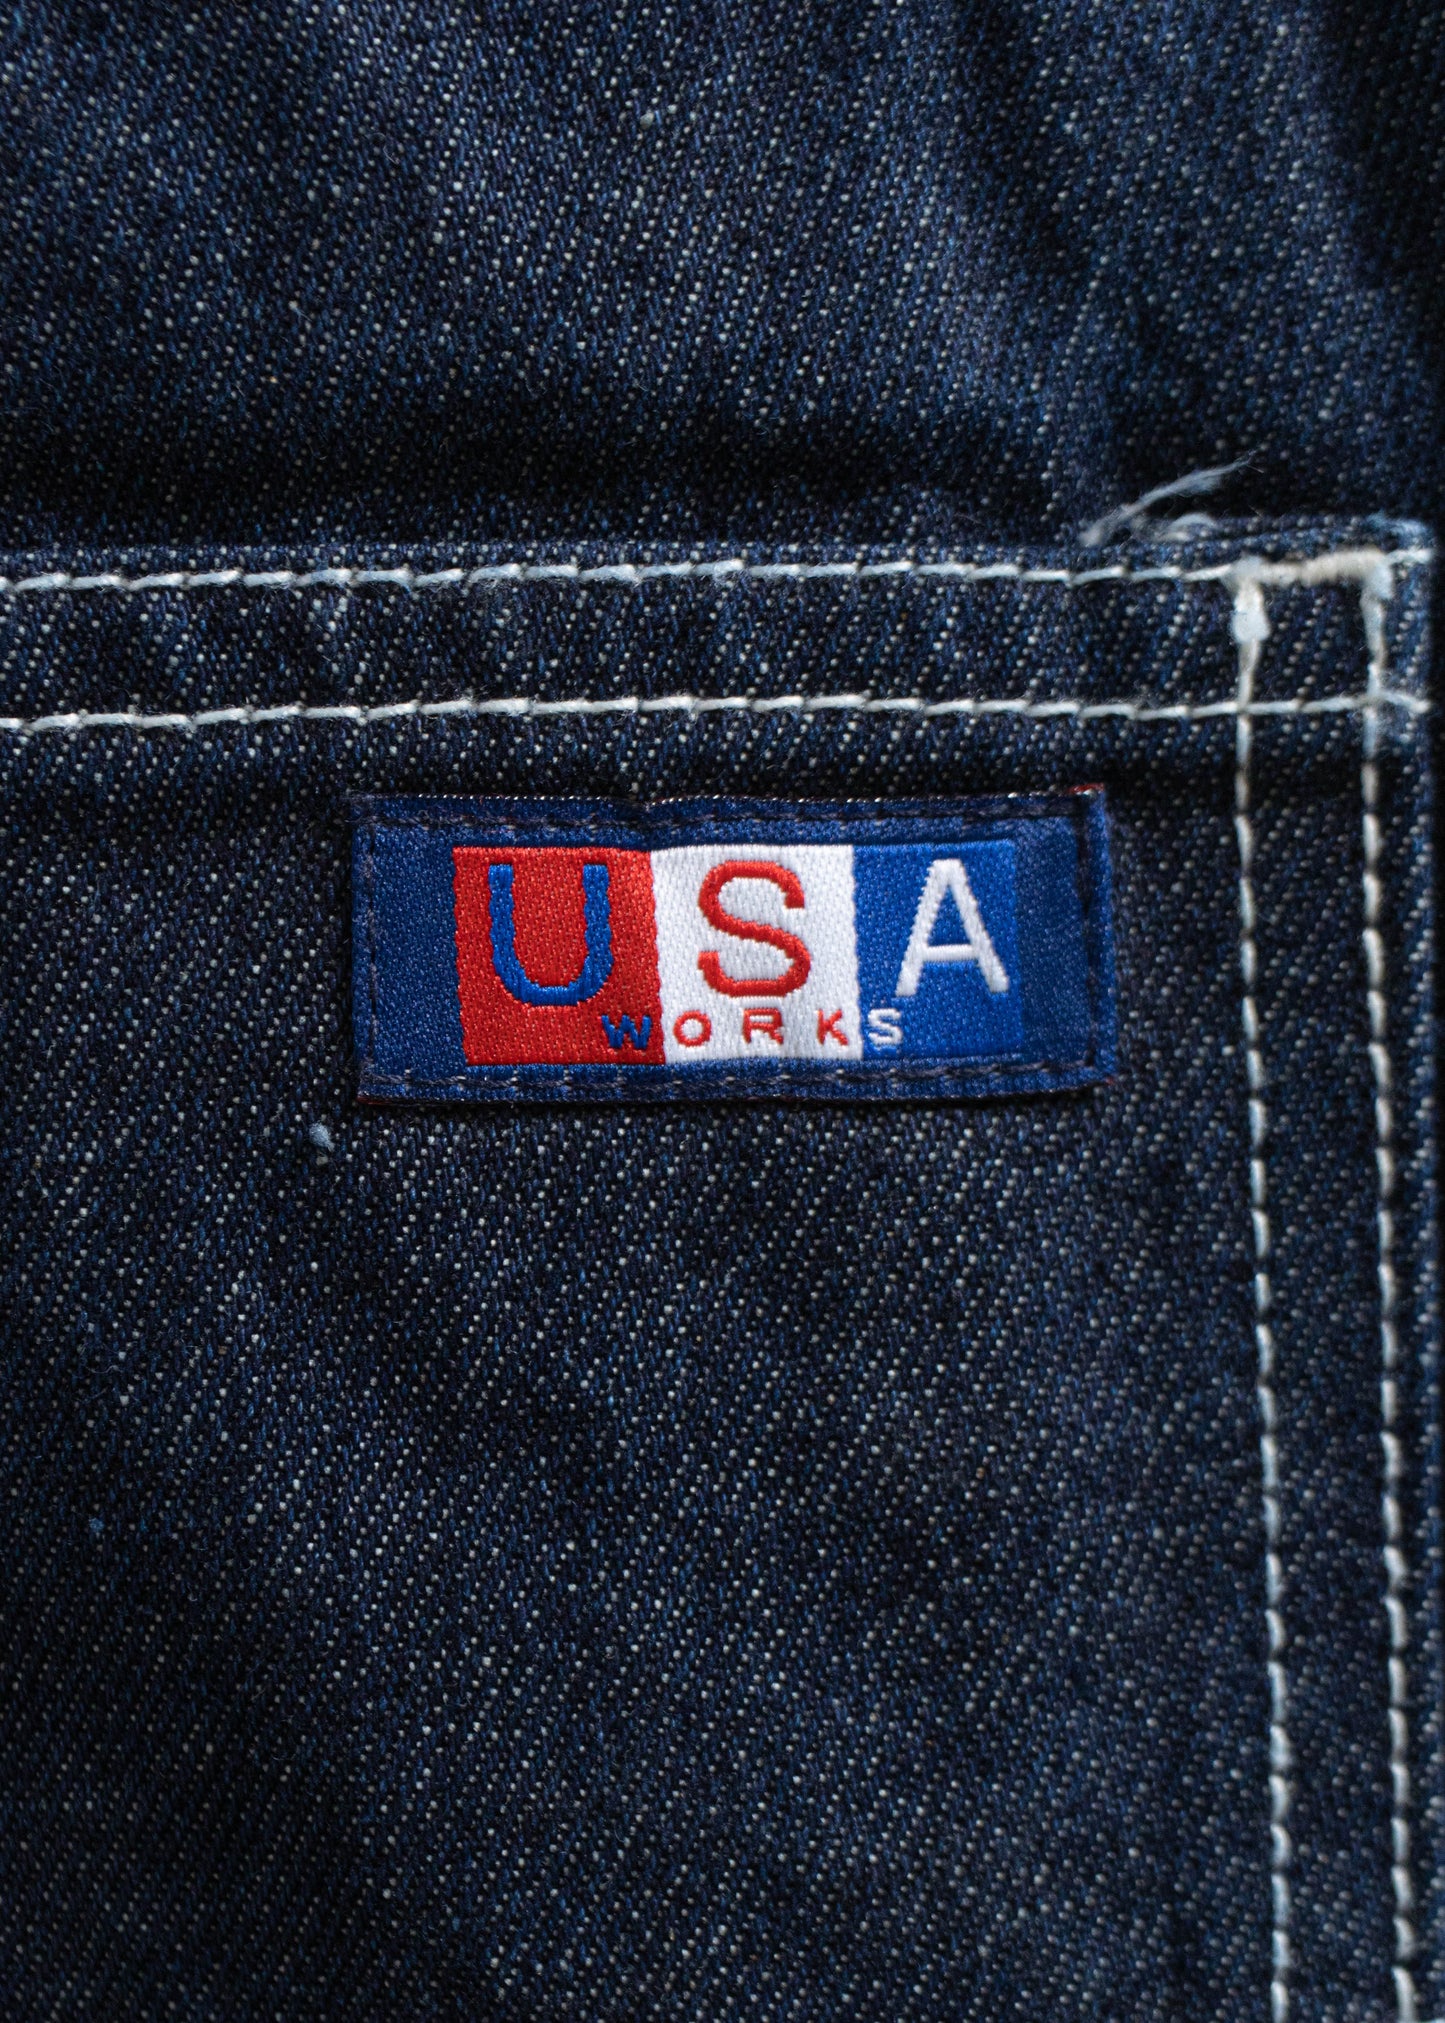 1980s USA Works Deadstock Denim Carpenter Pants Size Women's 40 Men's 42